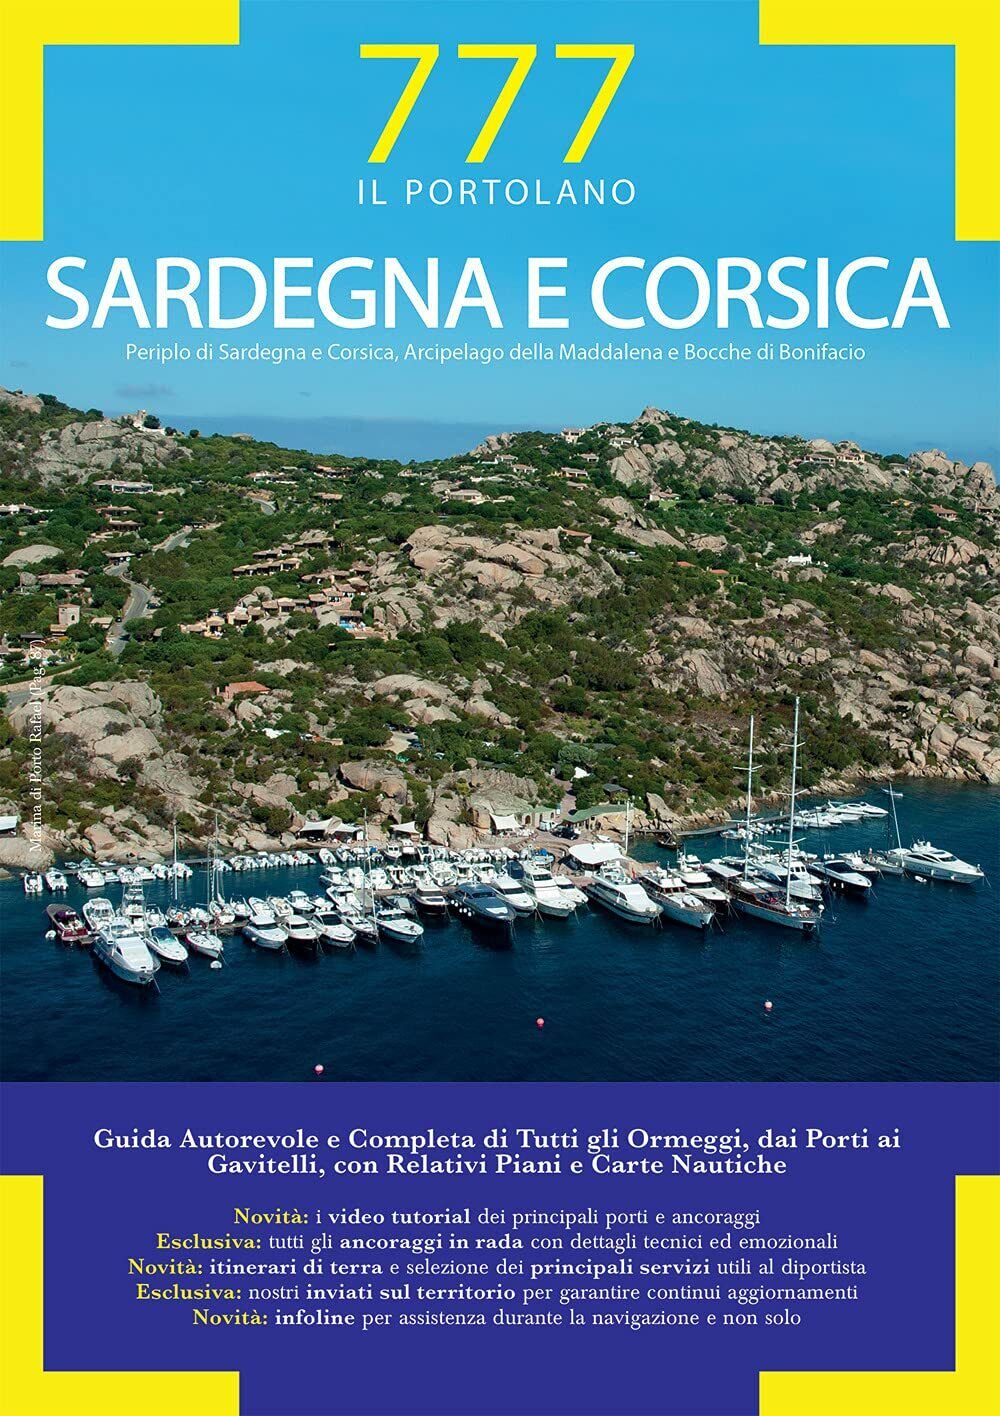 Sardegna e Corsica - Sbrizzi, Silvestro, Magnabosco - Magnamare, 2021 libro usato